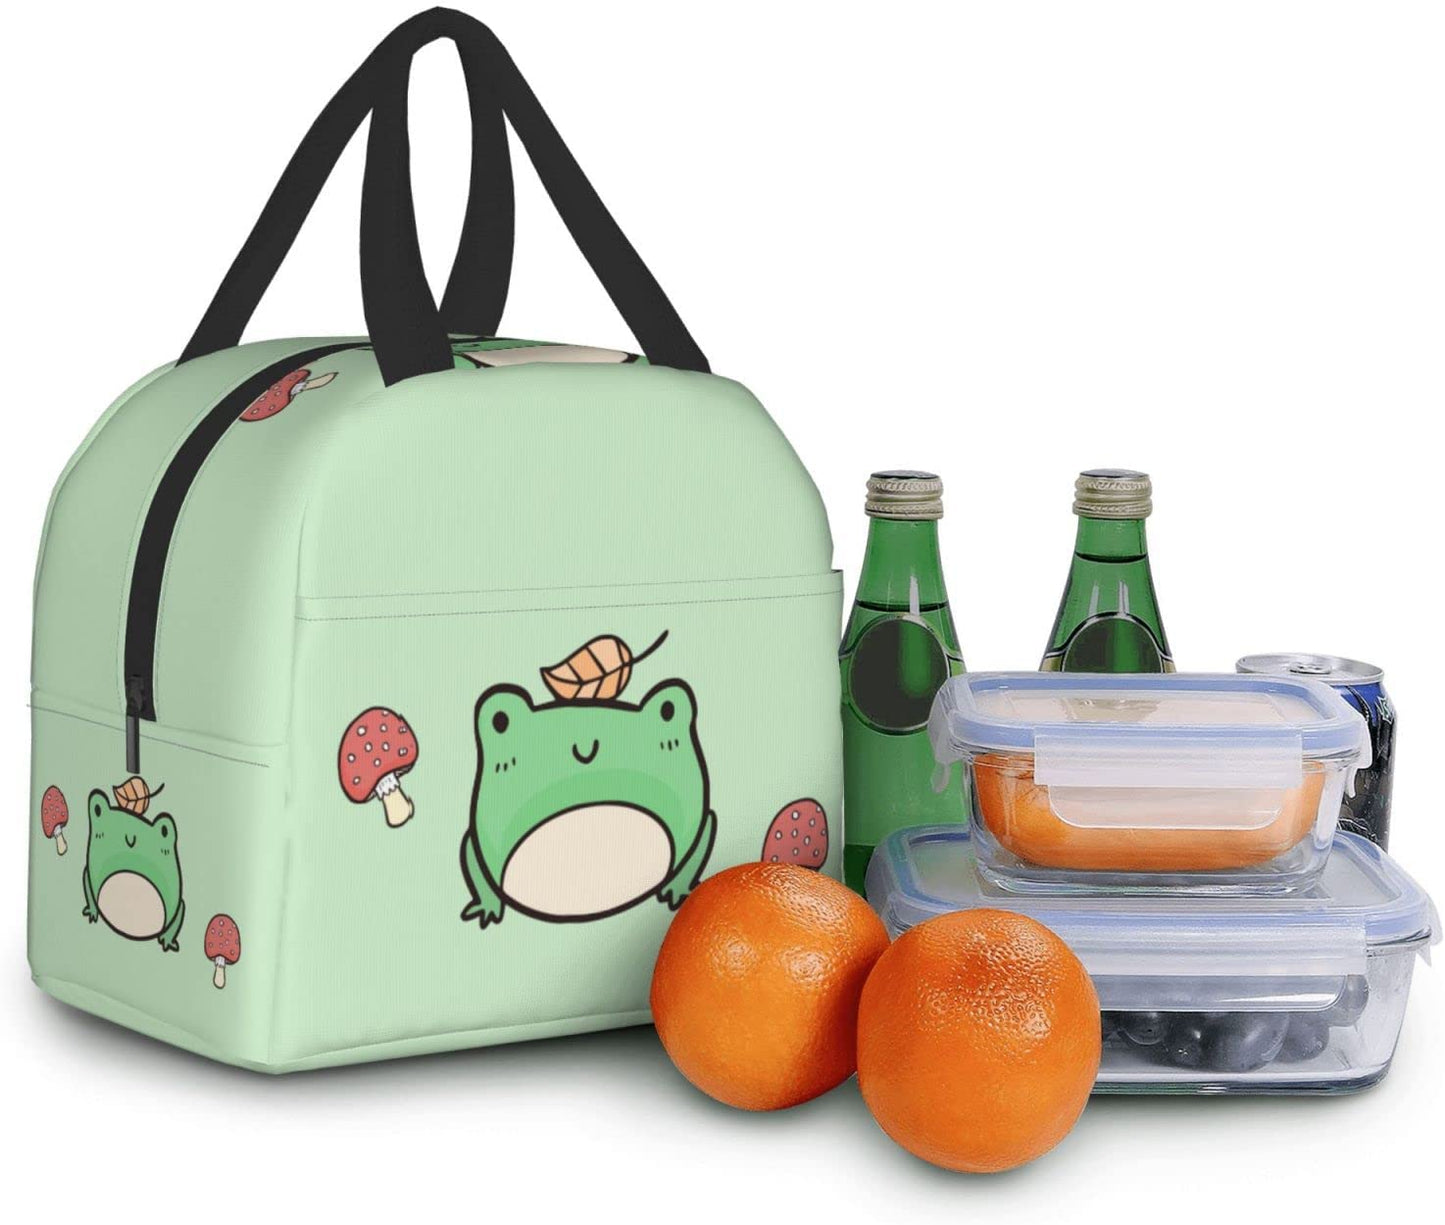 Kawaii Frog Lunch Bag and Food